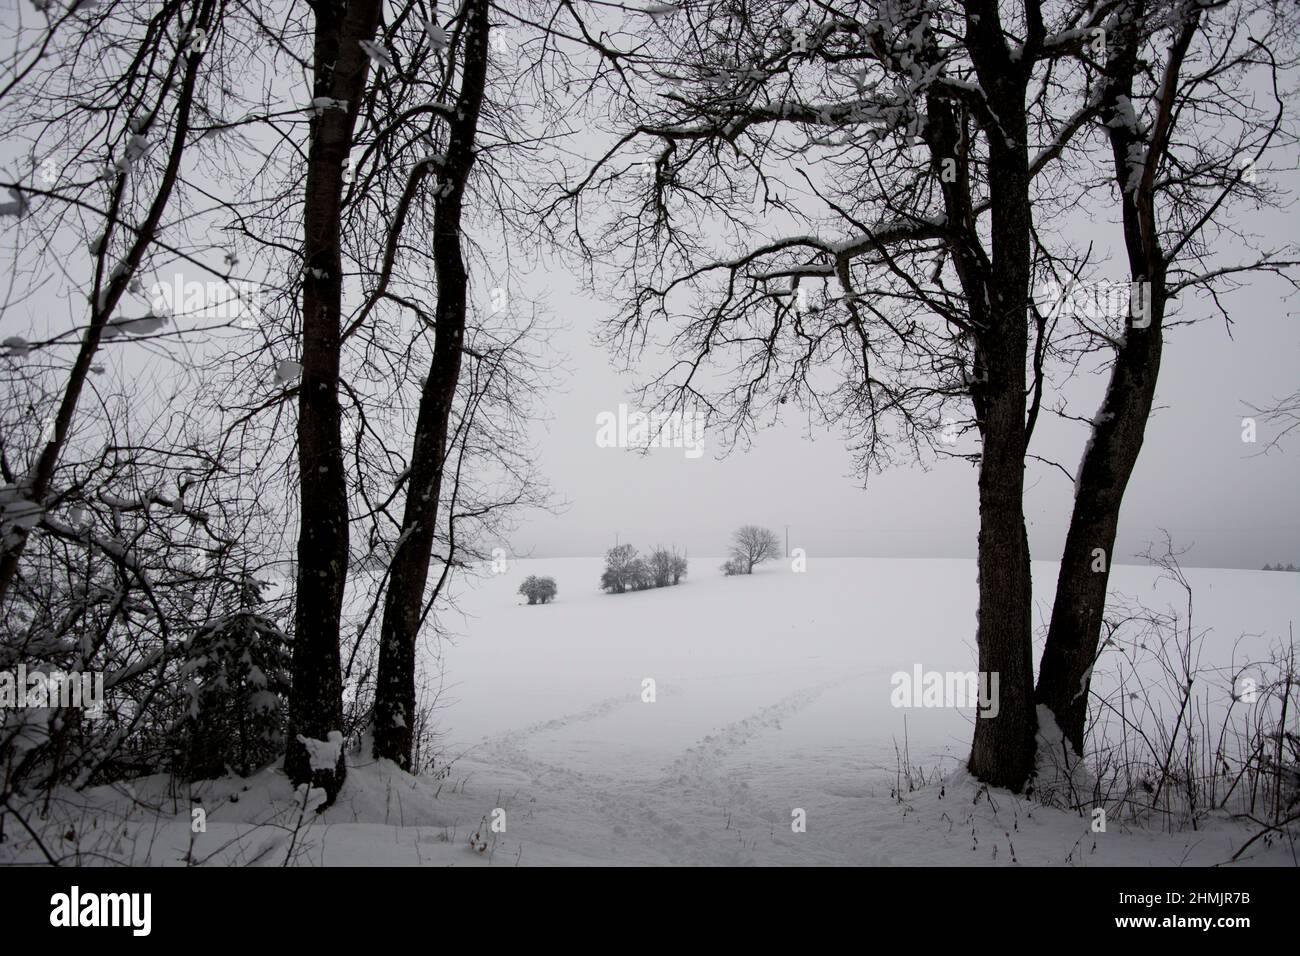 Fusssperen im Schnee führen en die offene Kulturlandschaft Foto de stock